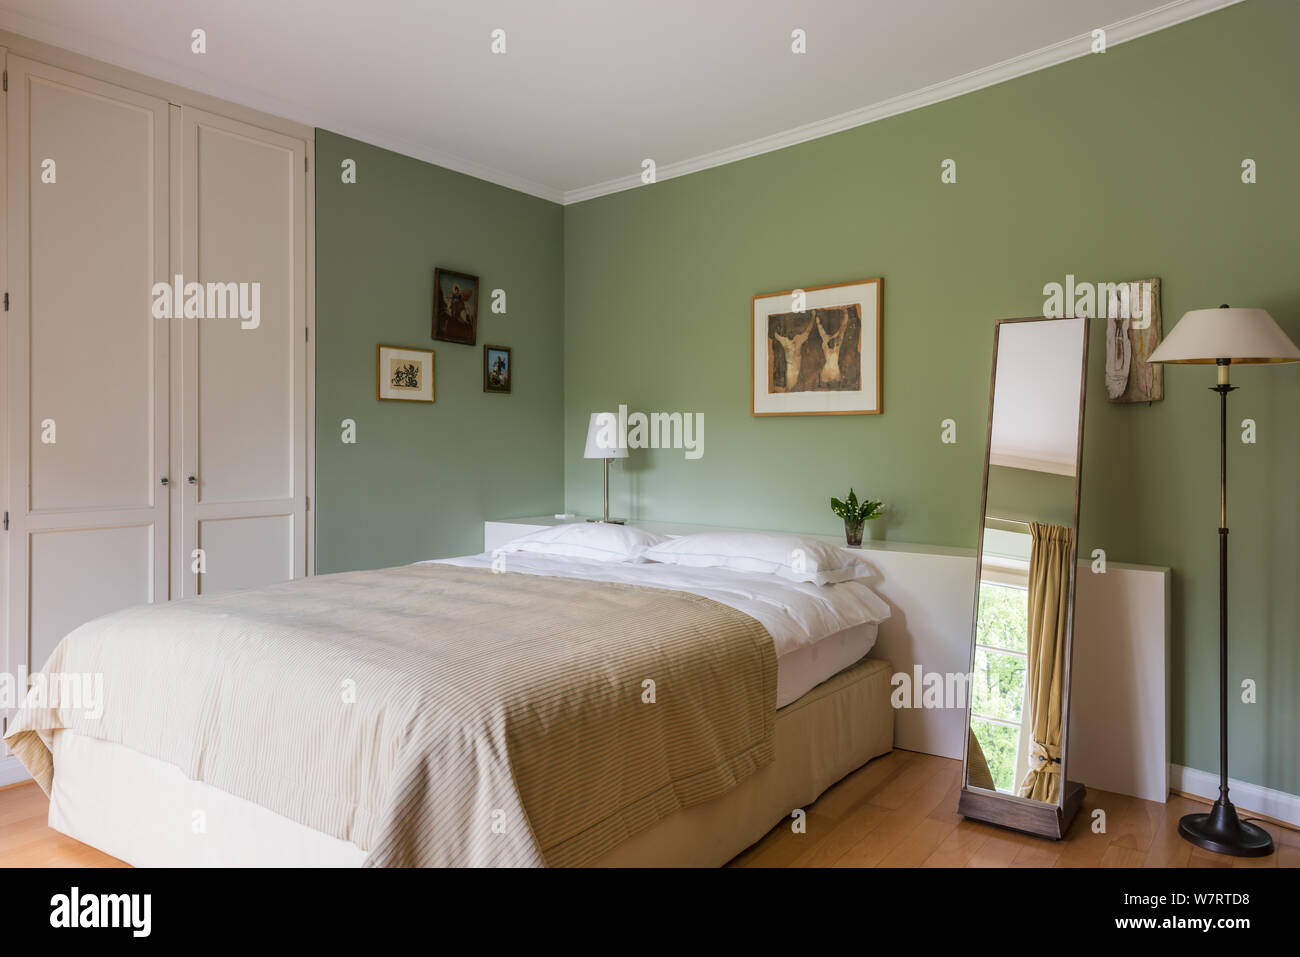 Grünen und weißen Farbtönen Landhausstil Schlafzimmer Stockfoto